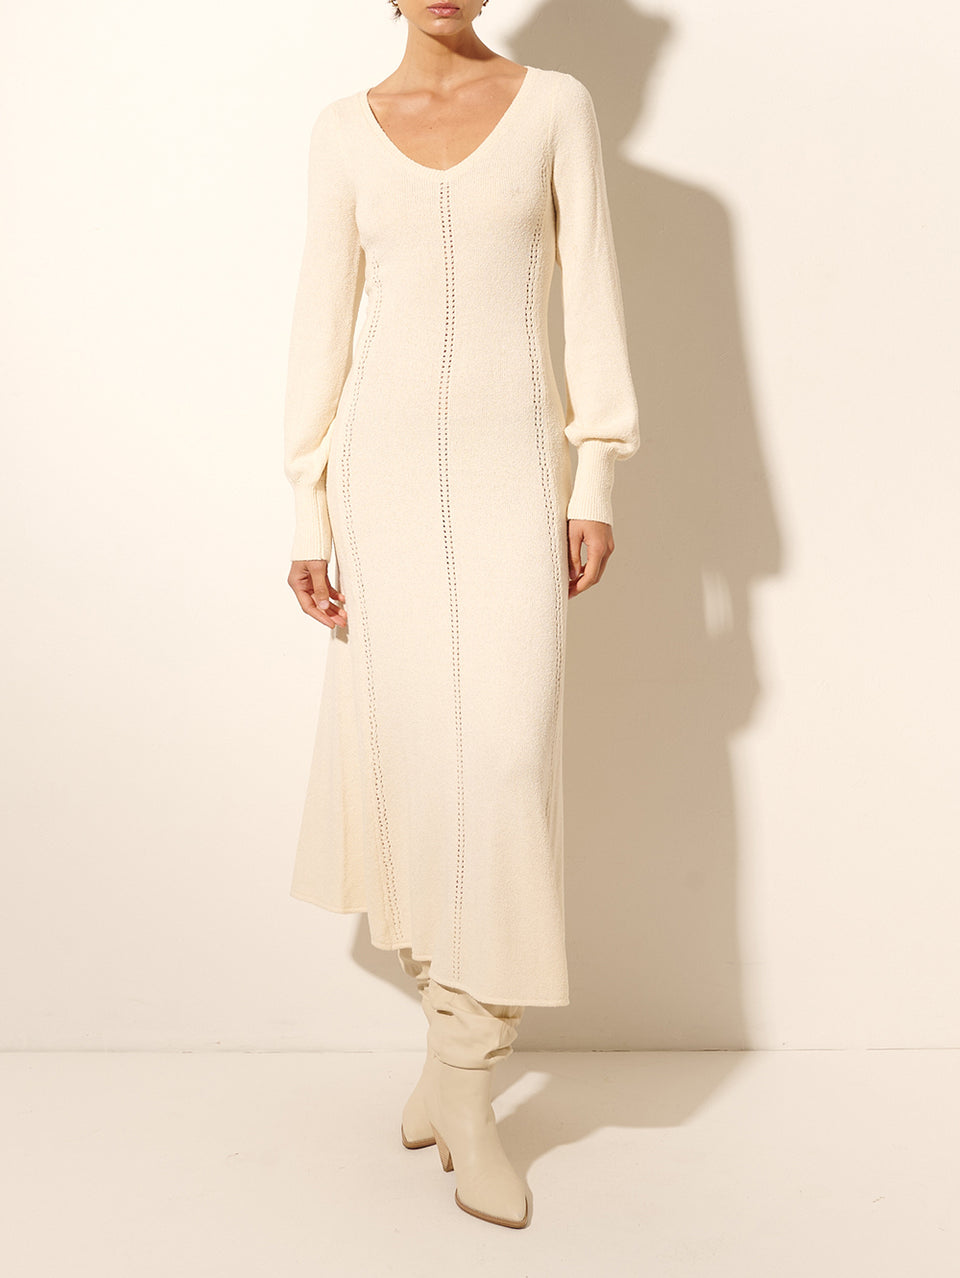 Cali Knit Dress KIVARI | Model wears cream knit midi dress